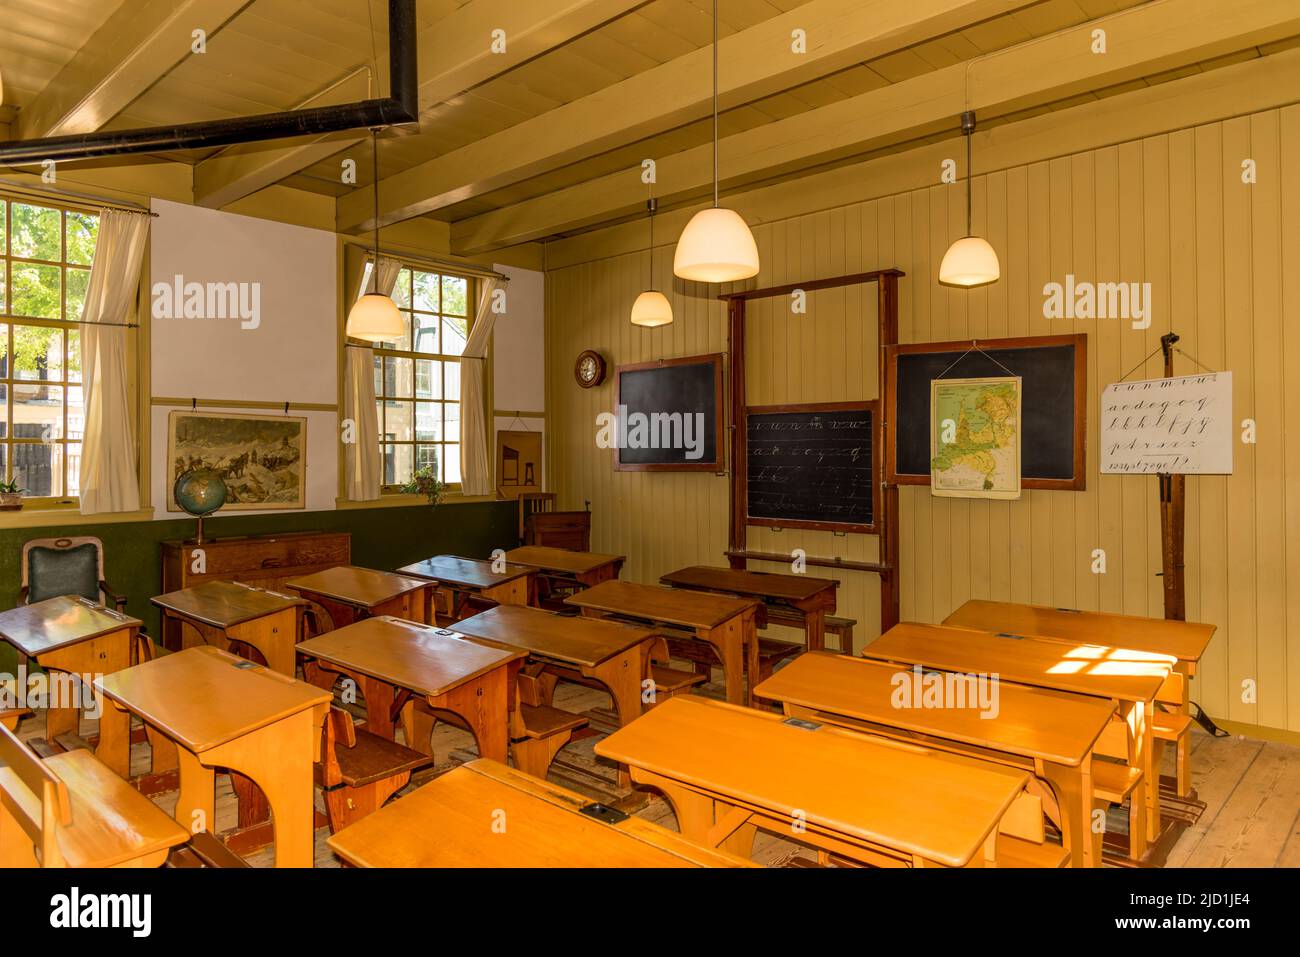 Enkhuizen, Paesi Bassi. Un'aula in vecchio stile del secolo scorso. Foto di alta qualità Foto Stock